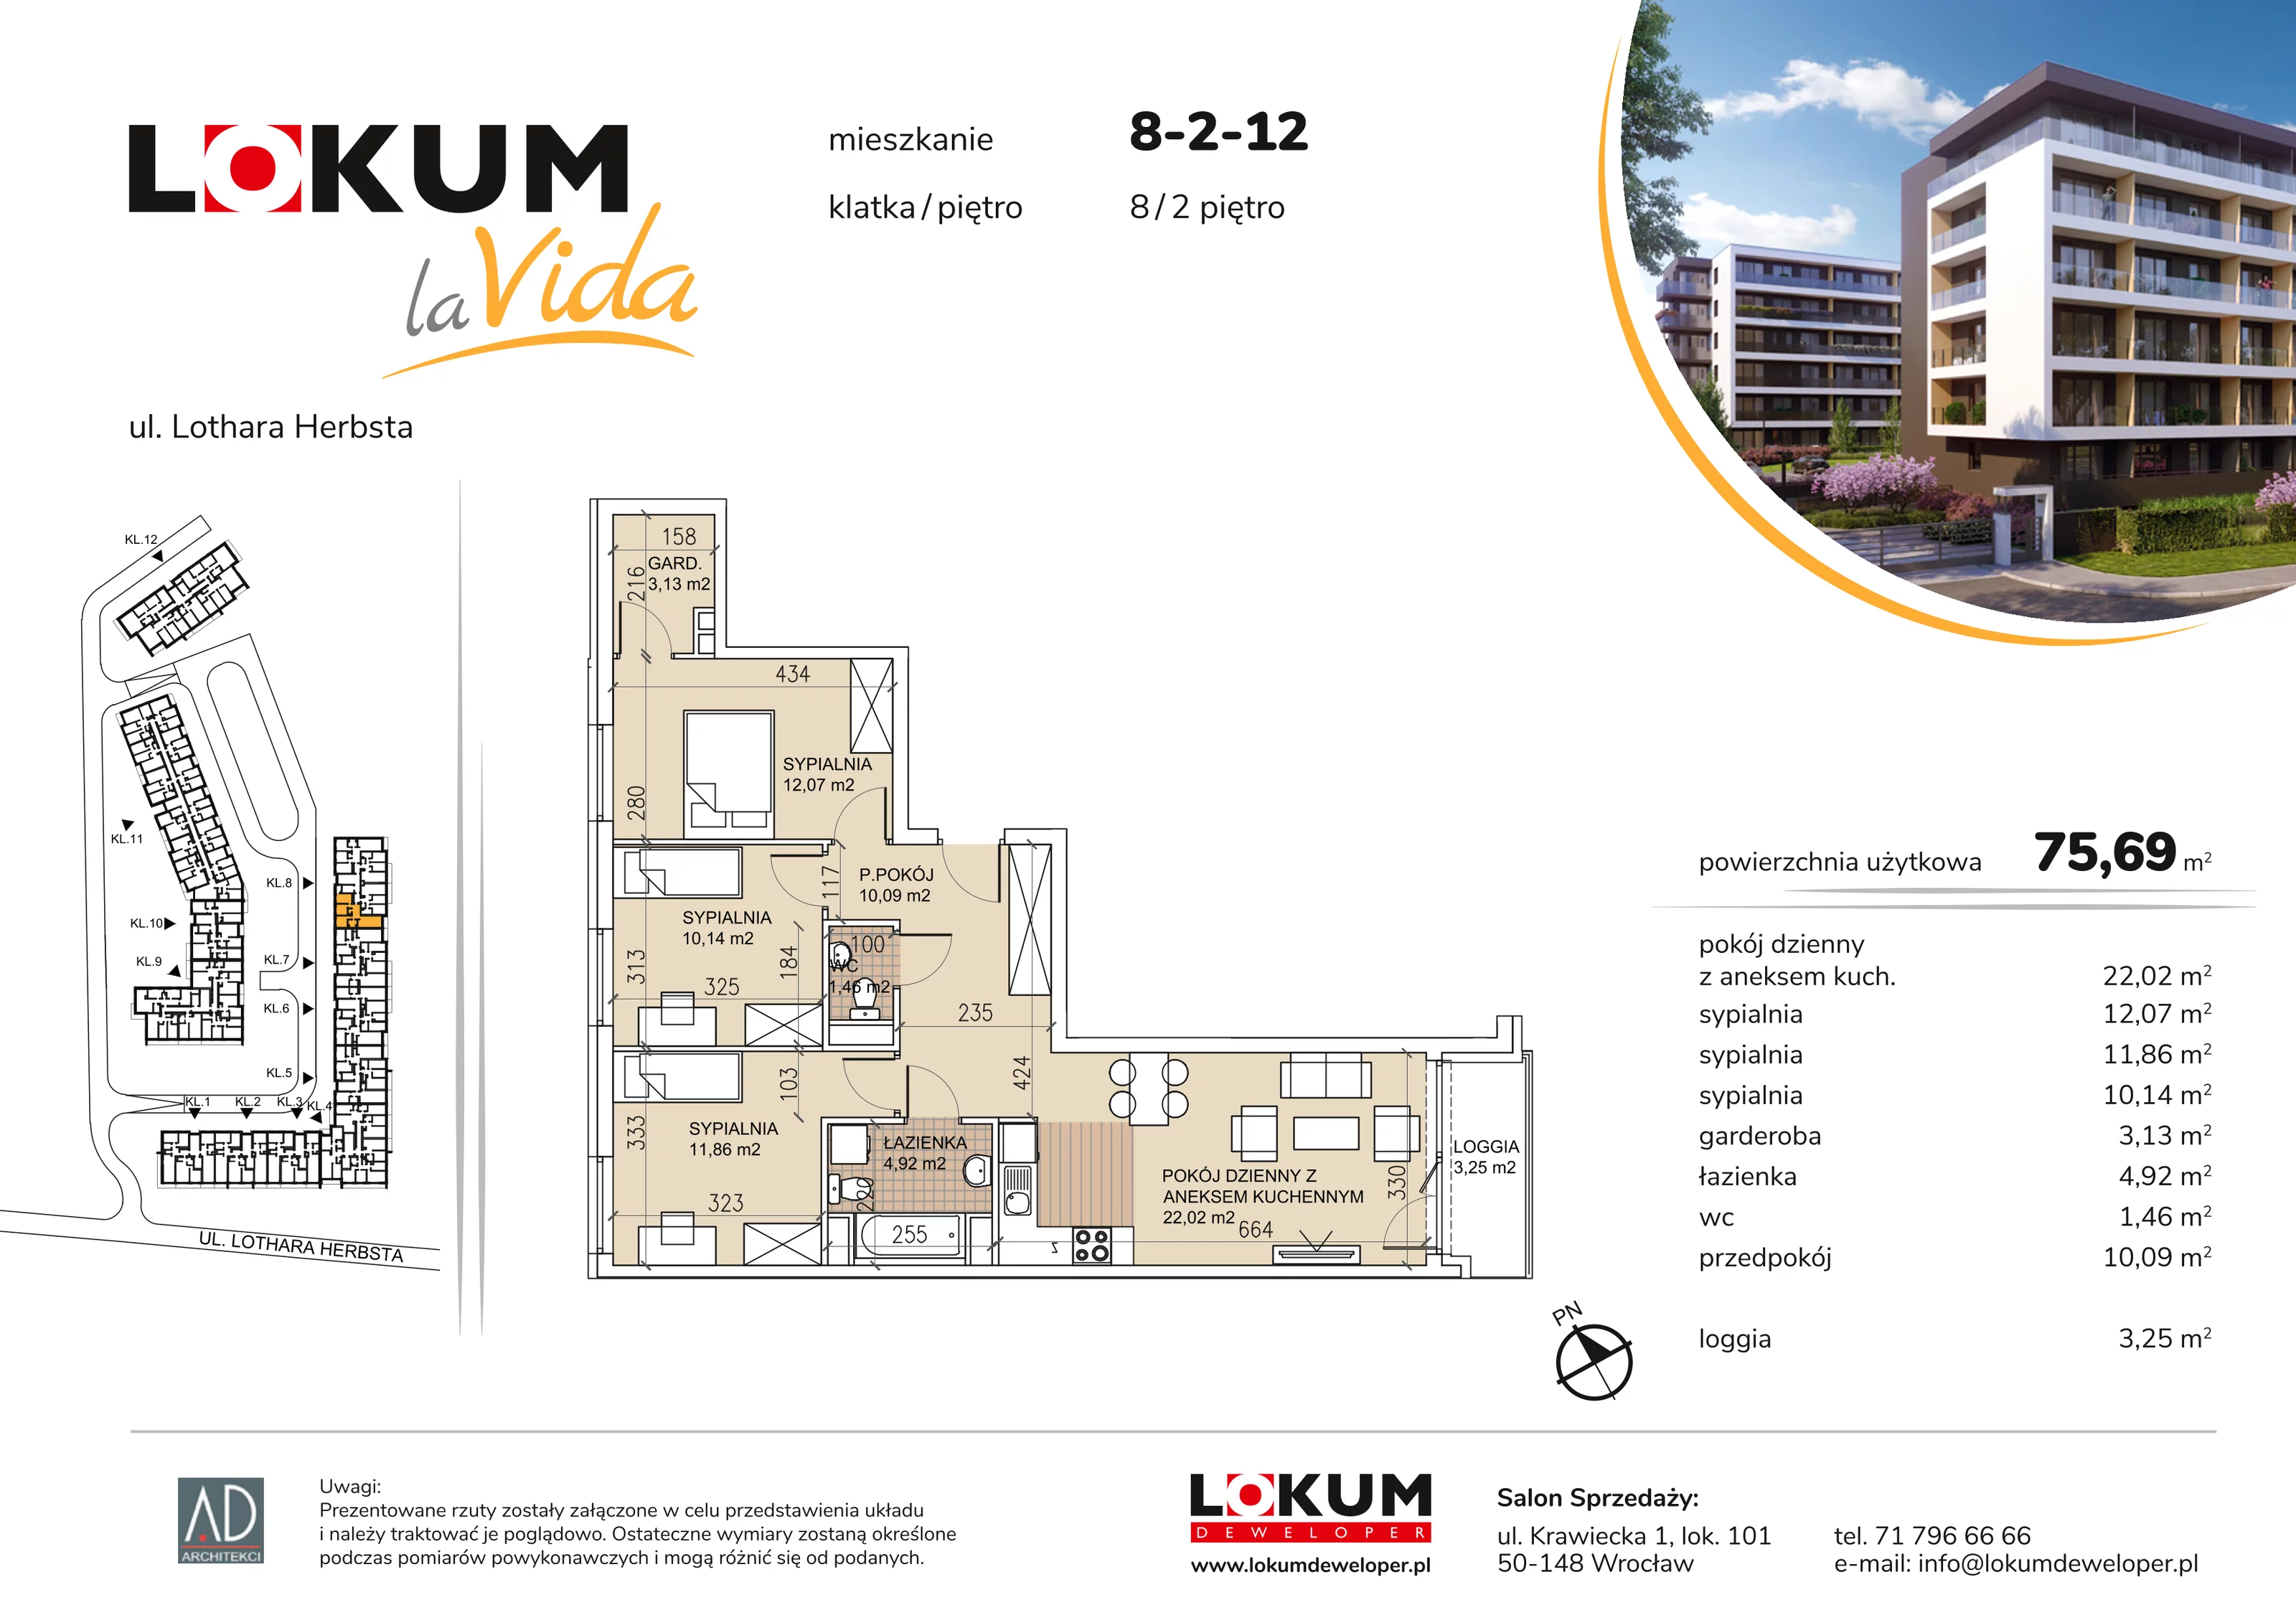 Mieszkanie 75,69 m², piętro 2, oferta nr 8-2-12, Lokum la Vida, Wrocław, Sołtysowice, ul. Lothara Herbsta